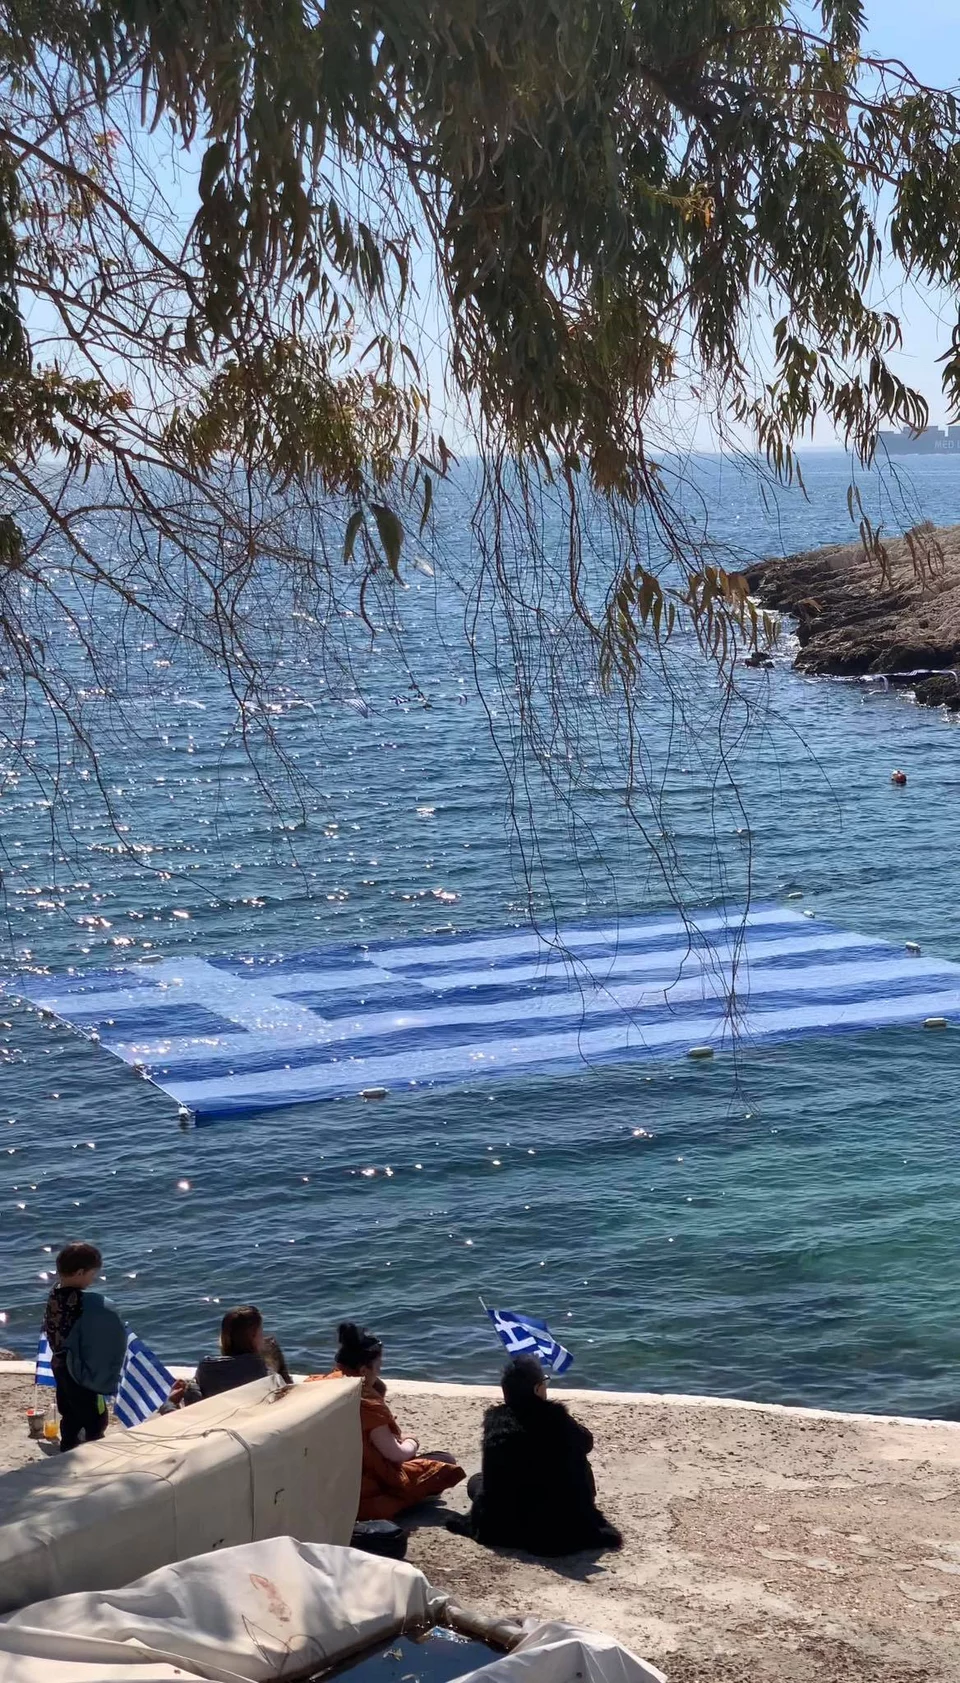 25η Μαρτίου: Η ελληνική σημαία κυμάτισε ξανά στα νερά της Πειραϊκής / Φωτογραφία: piraeuspress.gr